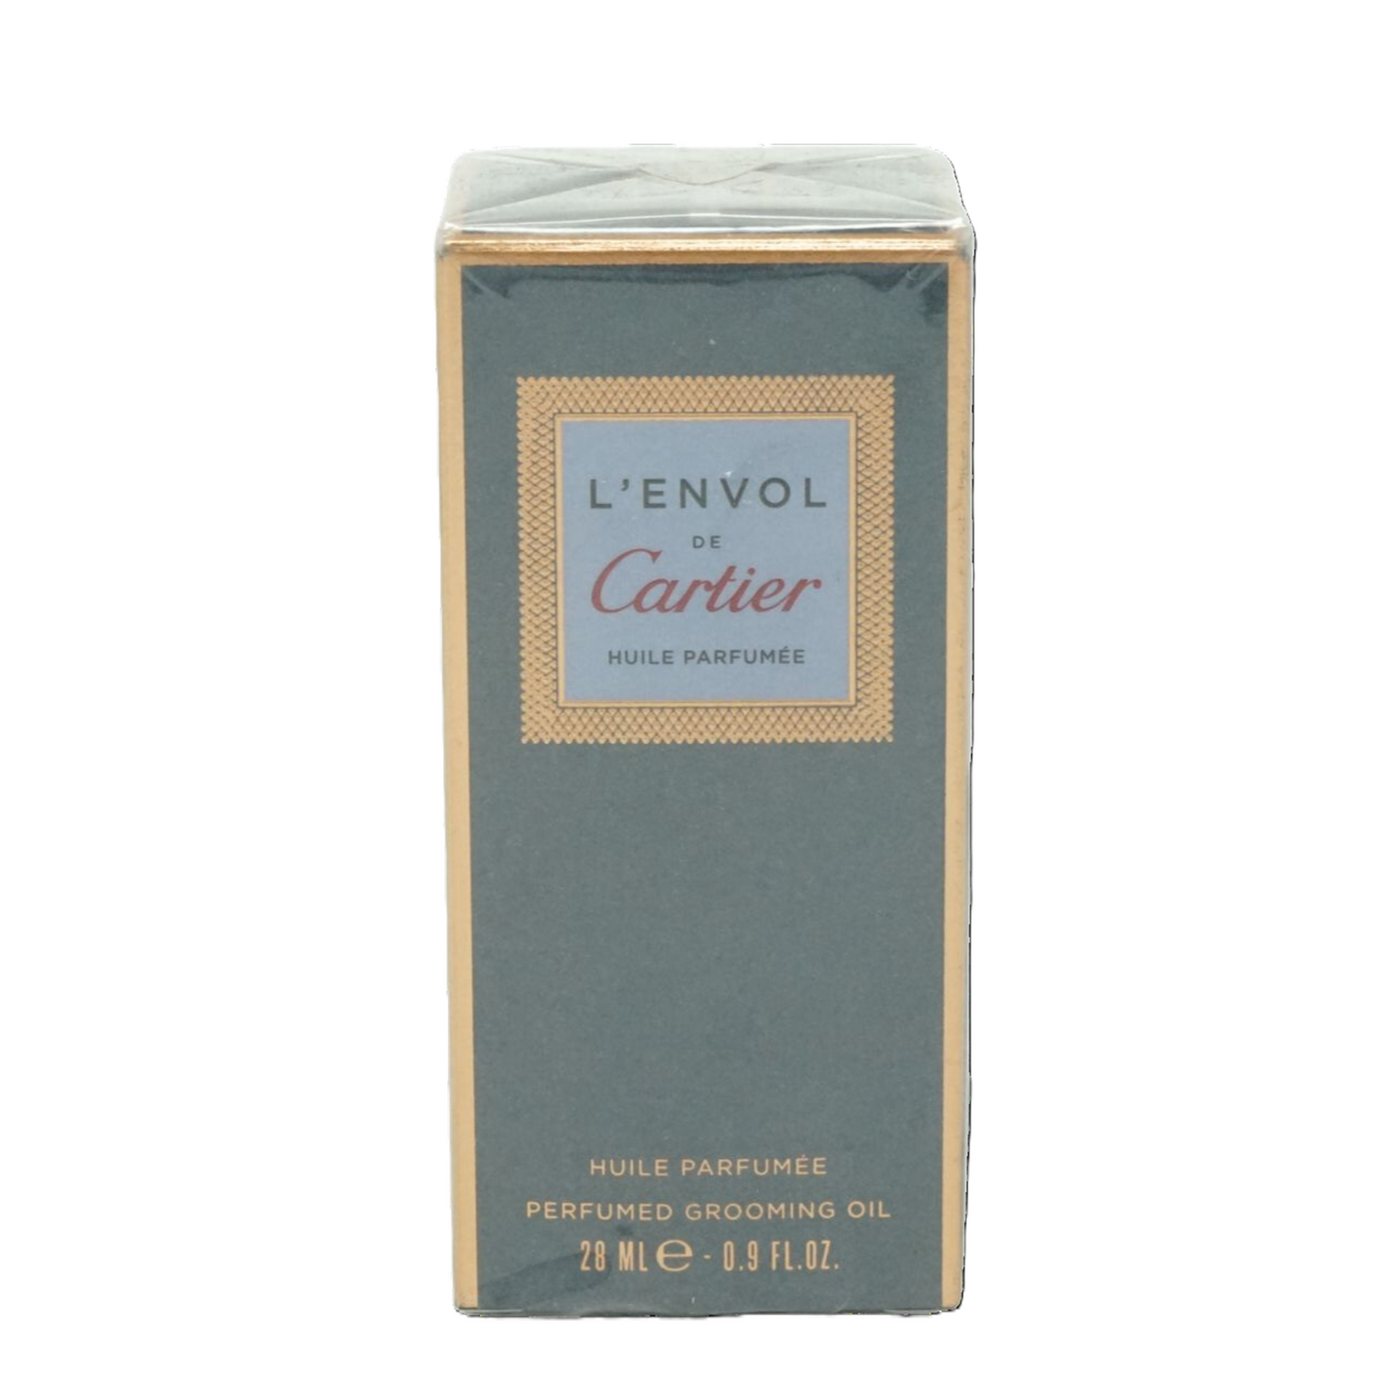 Cartier Öl-Parfüm Cartier L'Envol Perfumed - Grooming Oil 28ml von Cartier